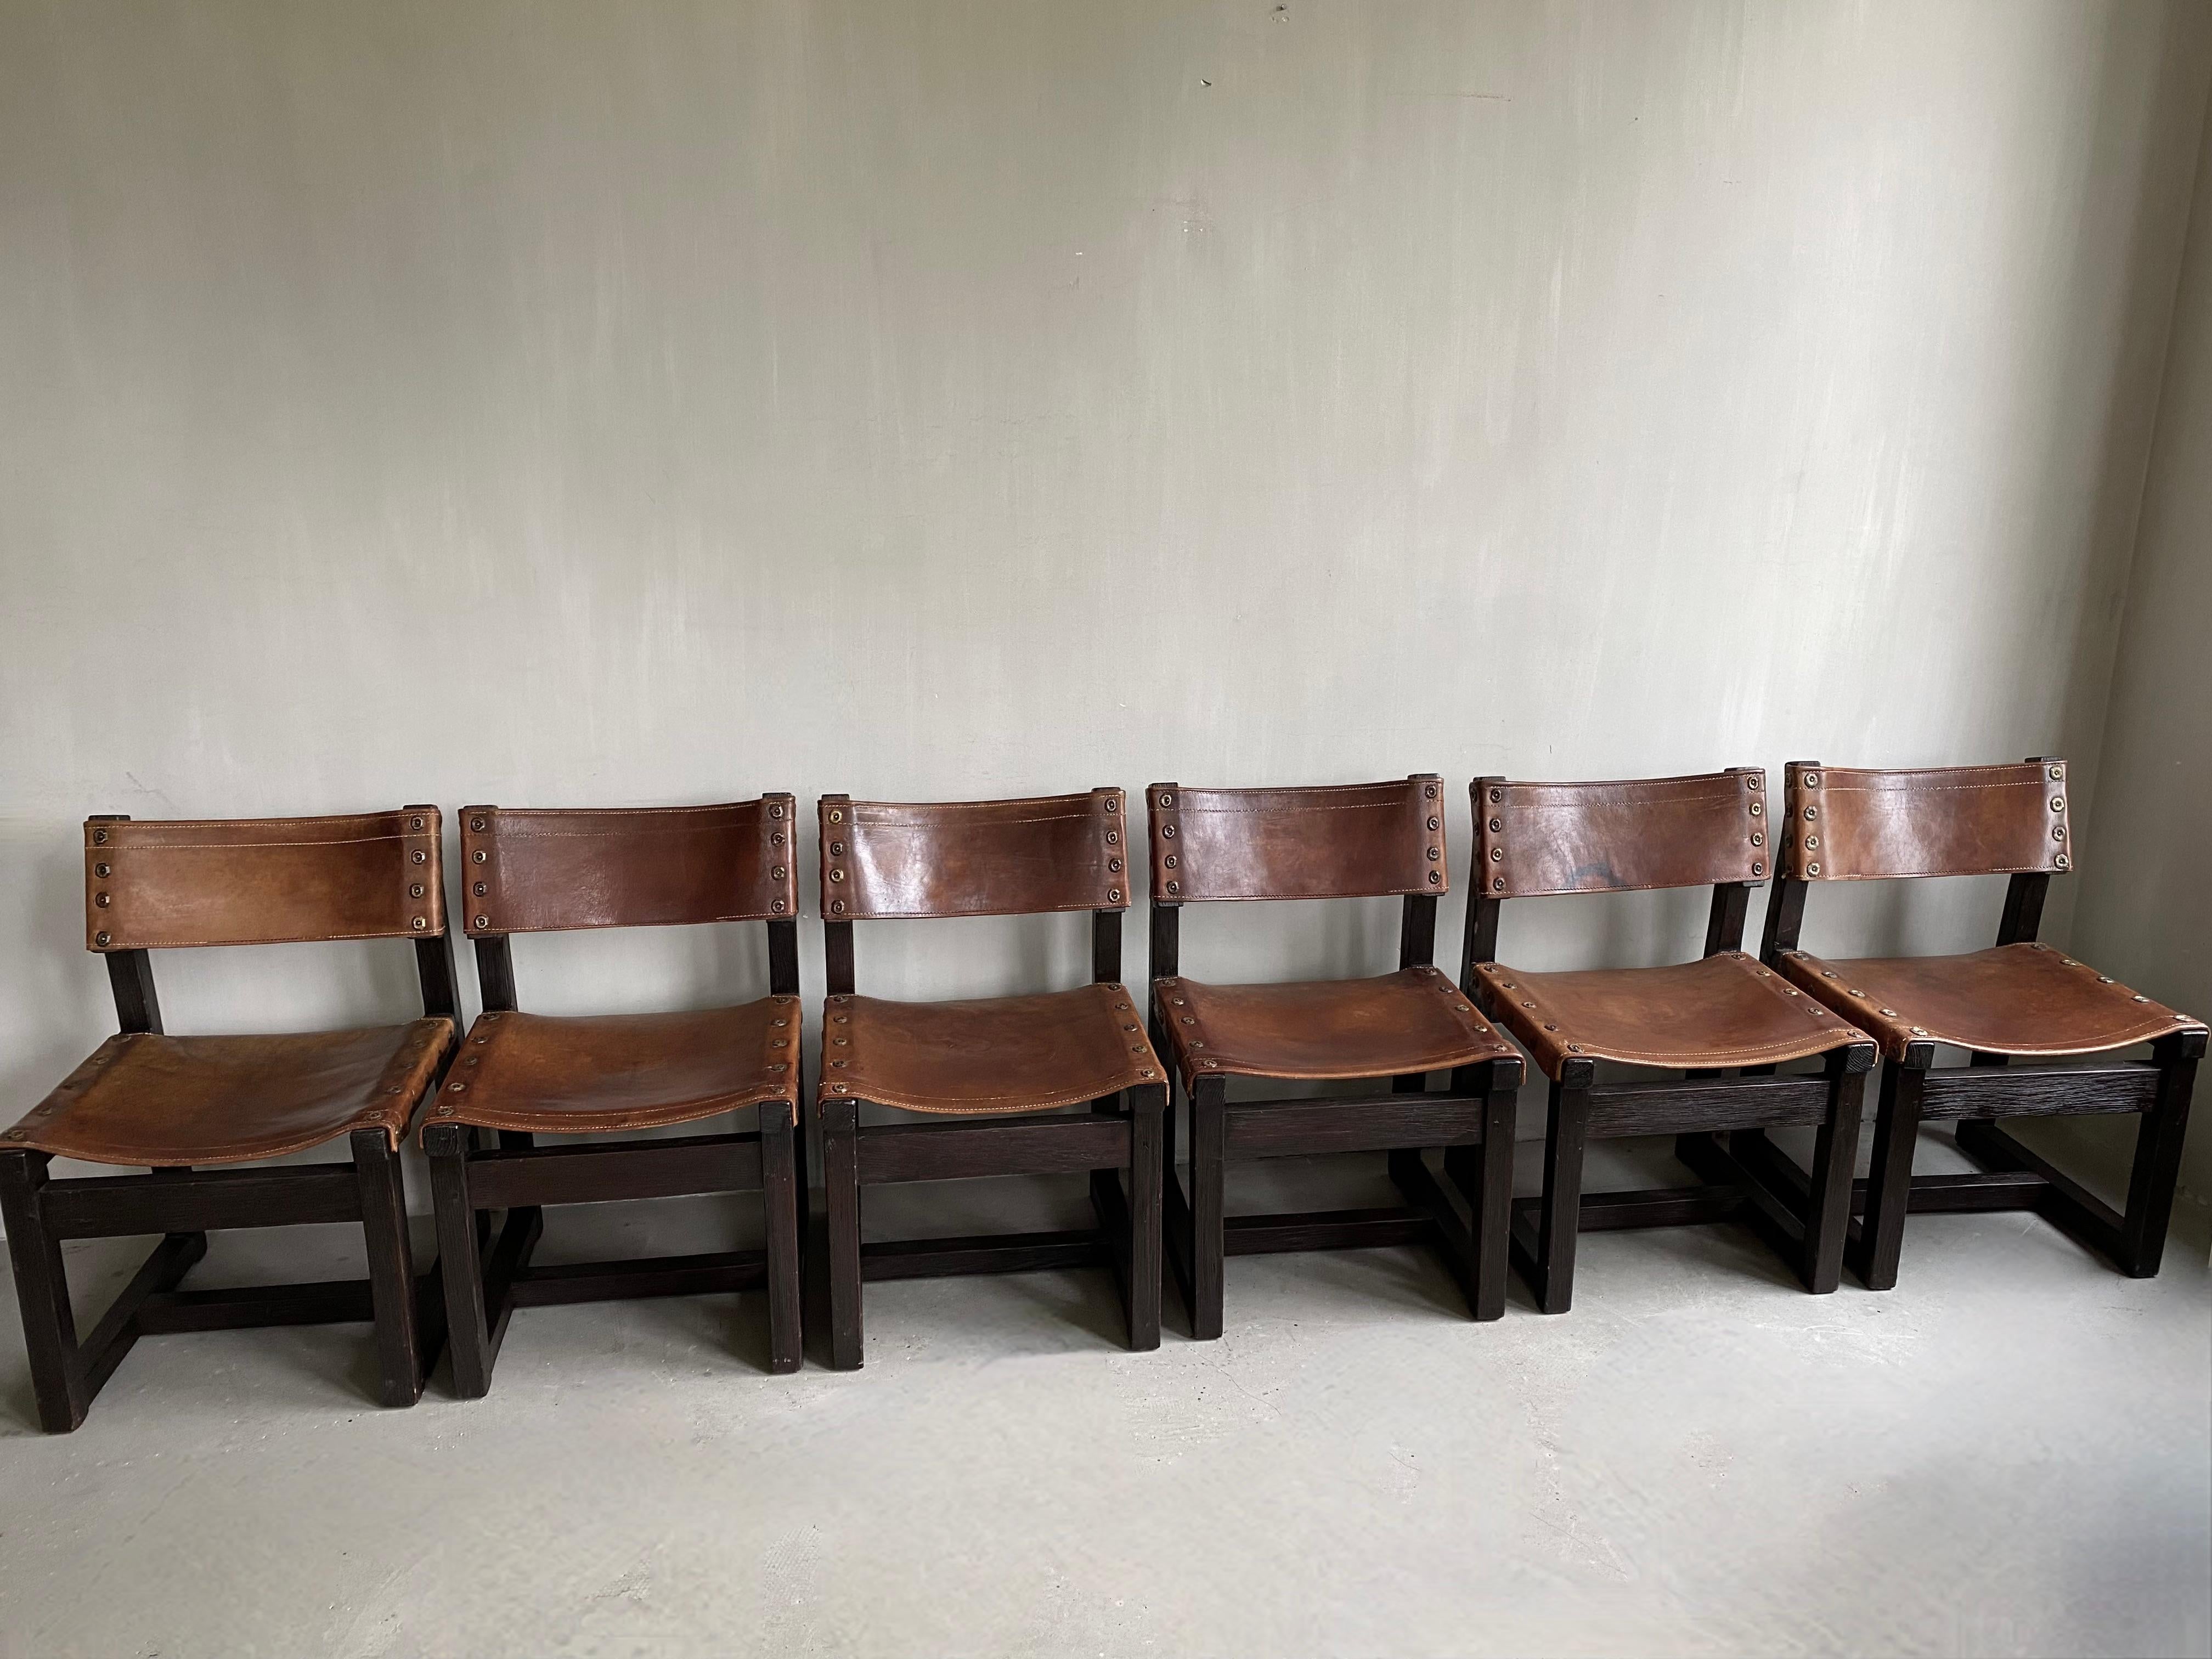 Ensemble exclusif de 6 chaises espagnoles de BIOSCA. Entièrement d'origine, le cuir de la selle a un bel aspect usagé. Le cadre en bois est ébonisé.
Un minimalisme chaleureux qui convient parfaitement à une table, ainsi qu'à un fauteuil dans un